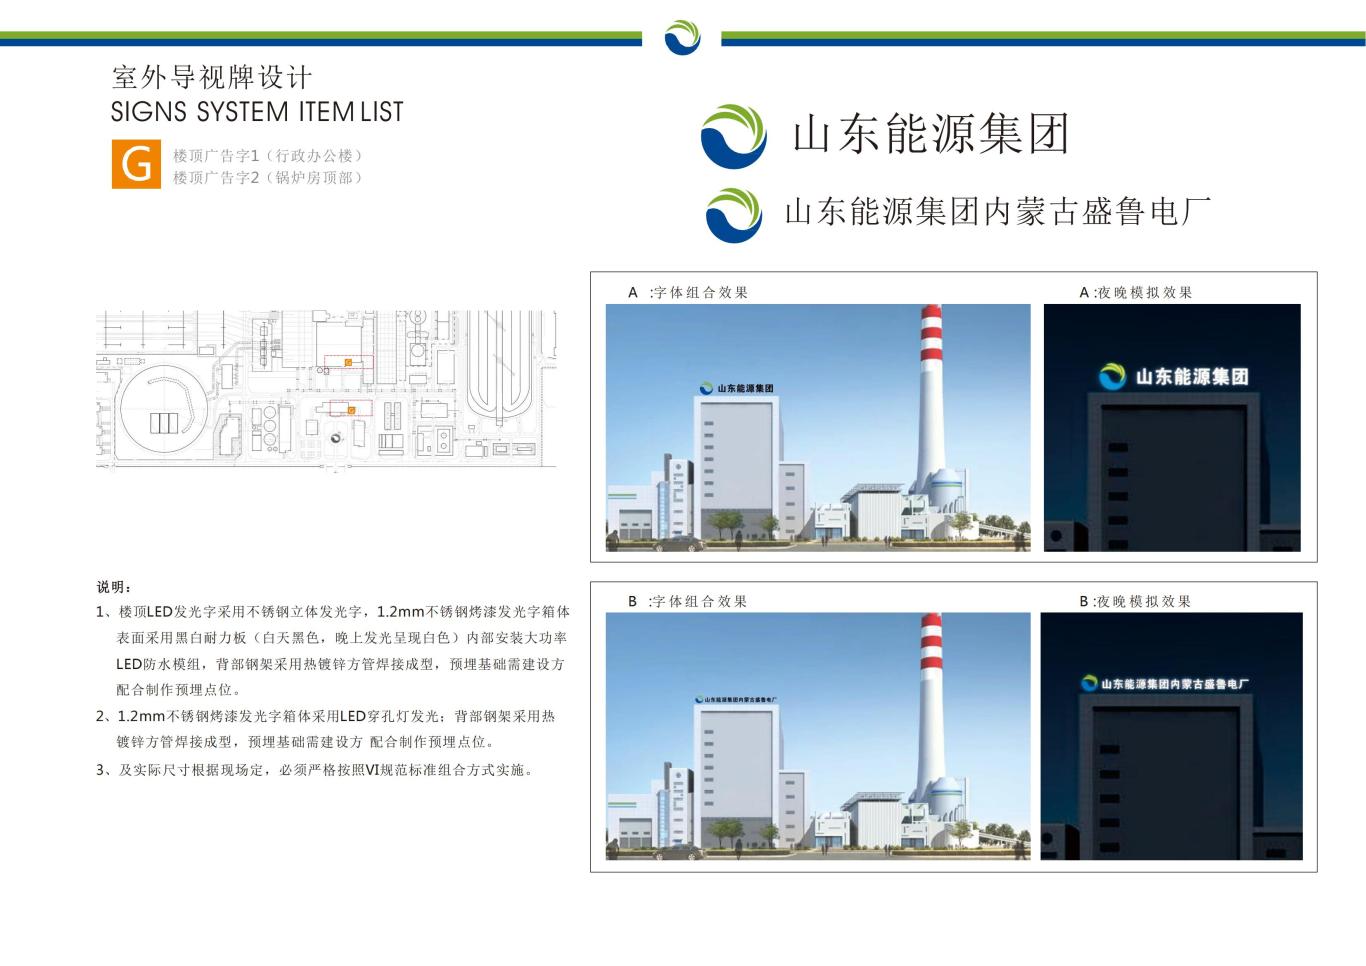 山东能源集团内蒙古盛鲁电厂标识导引方案设计图13